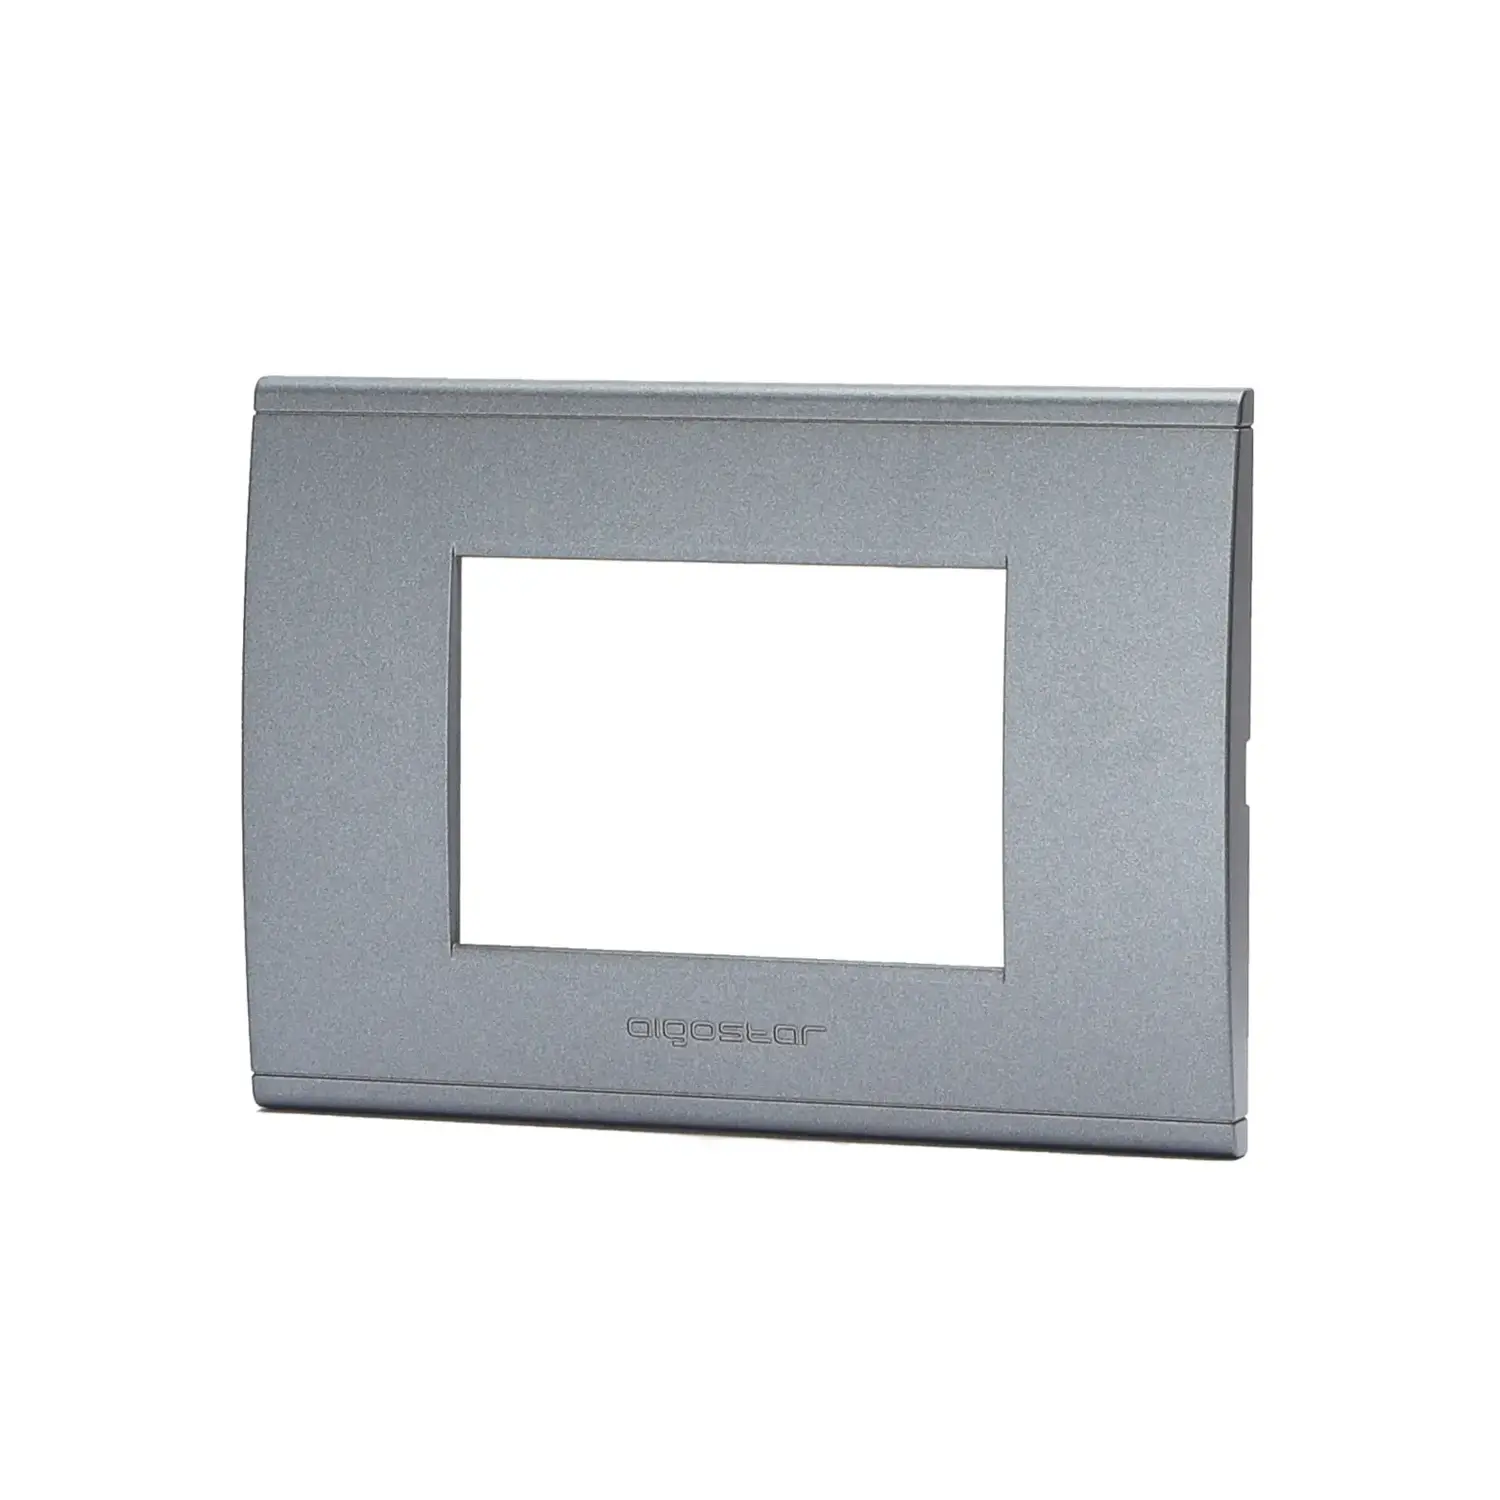 immagine placca di plastica compatibile bticino livinglight international grigio 3 fori